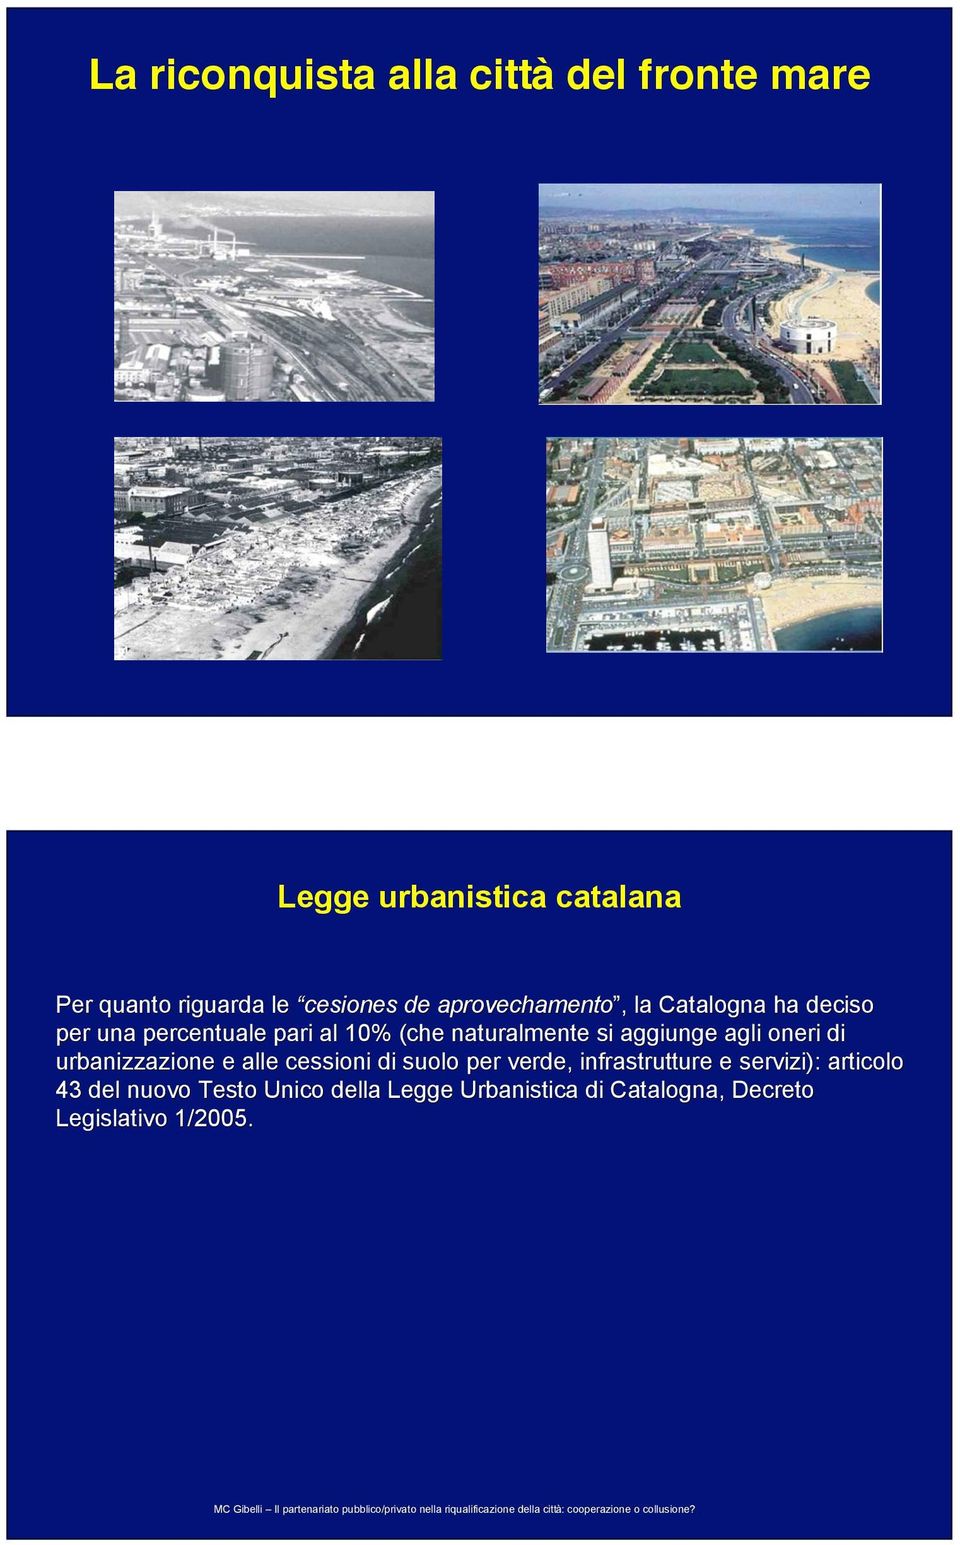 di suolo per verde, infrastrutture e servizi): articolo 43 del nuovo Testo Unico della Legge Urbanistica di Catalogna, Decreto